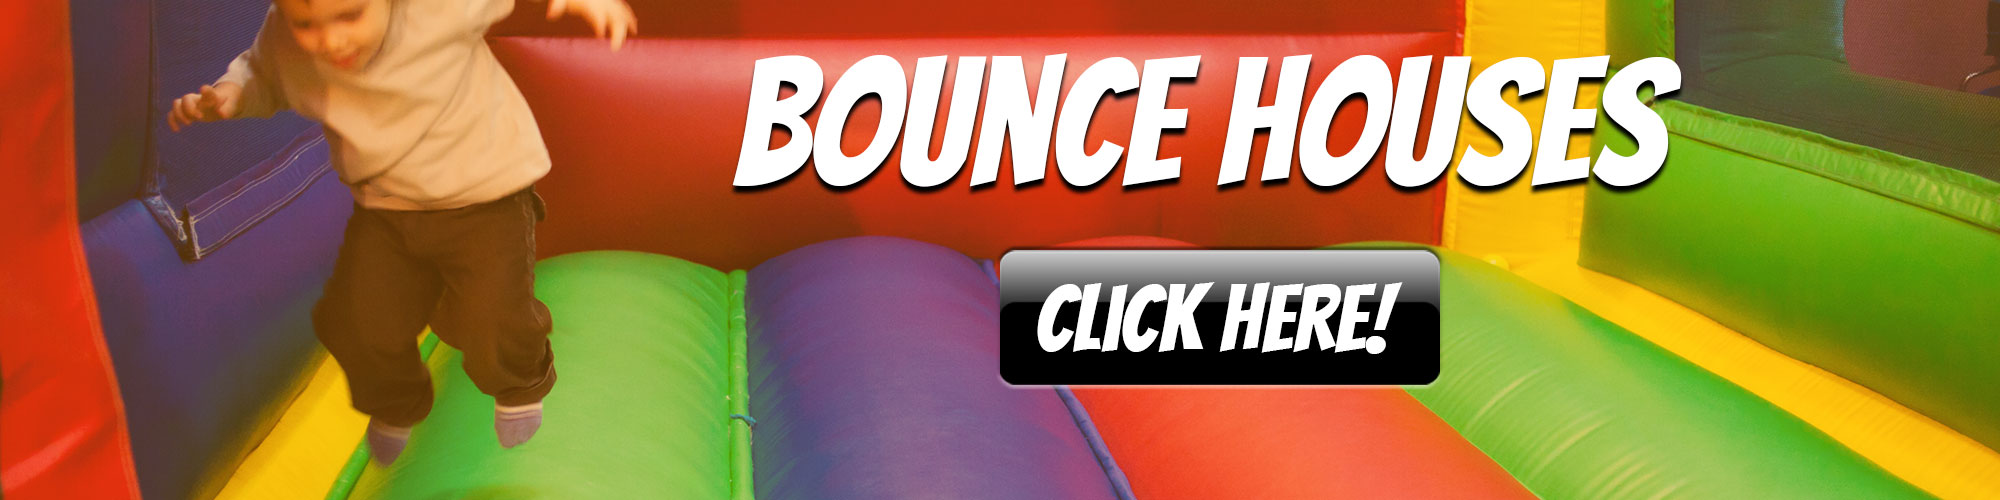 Bounce Hosue Rentals